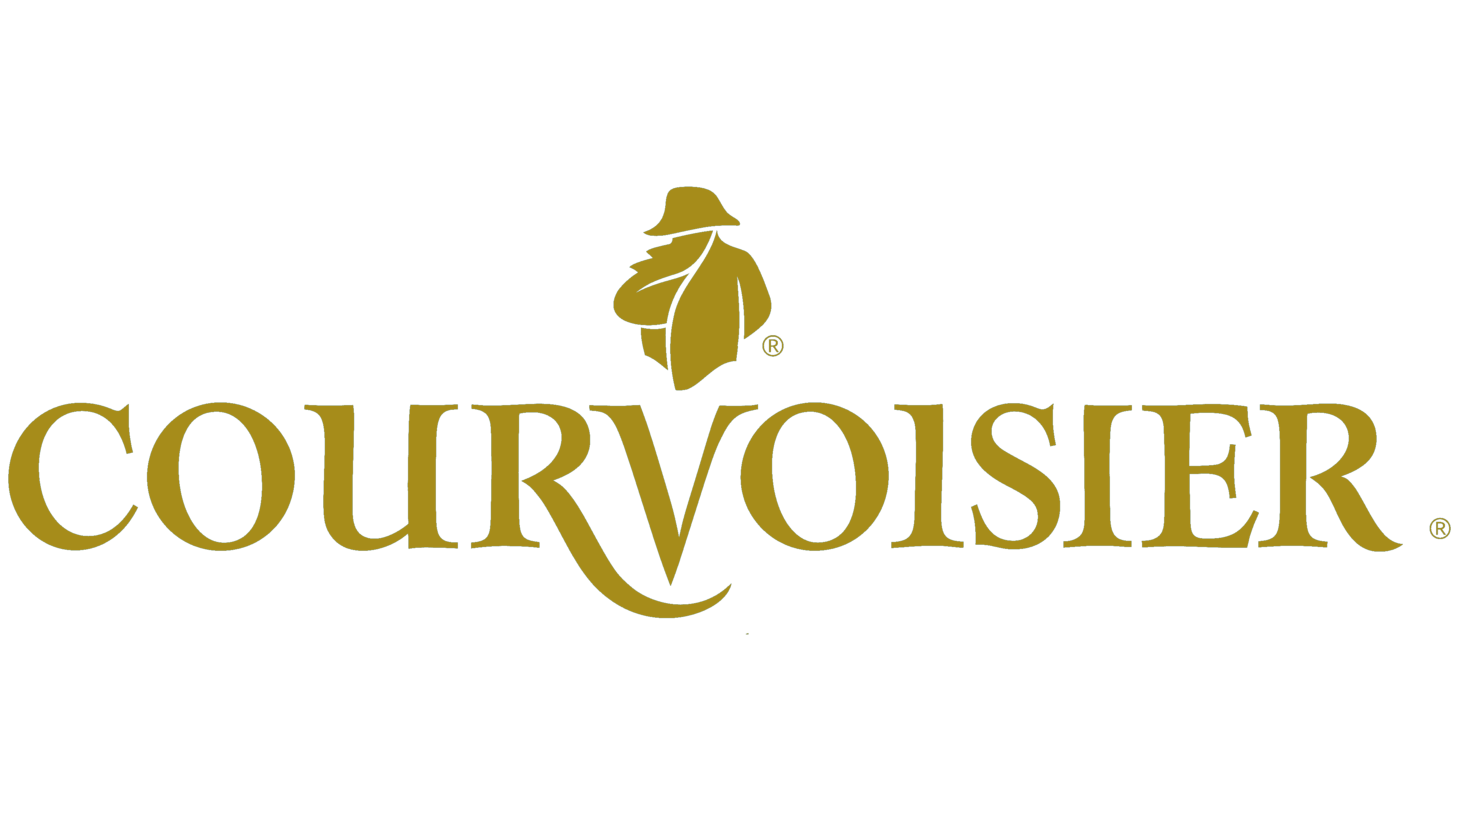 Courvoisier logo